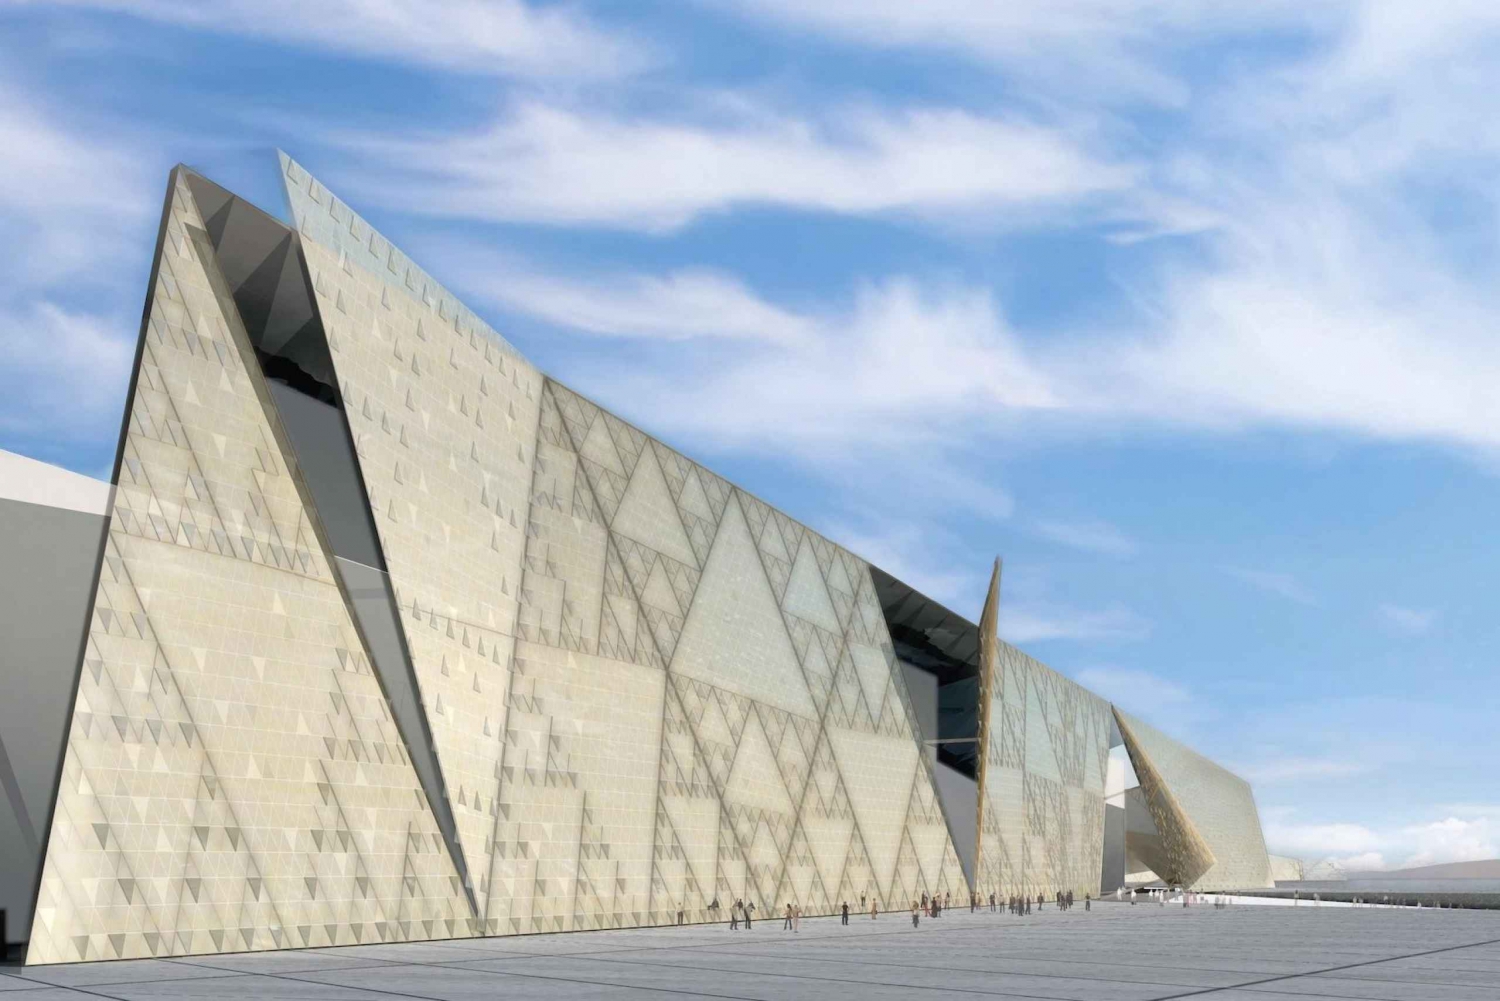 3 dias para as pirâmides de Gizé, o Museu Egípcio e o Museu GEM